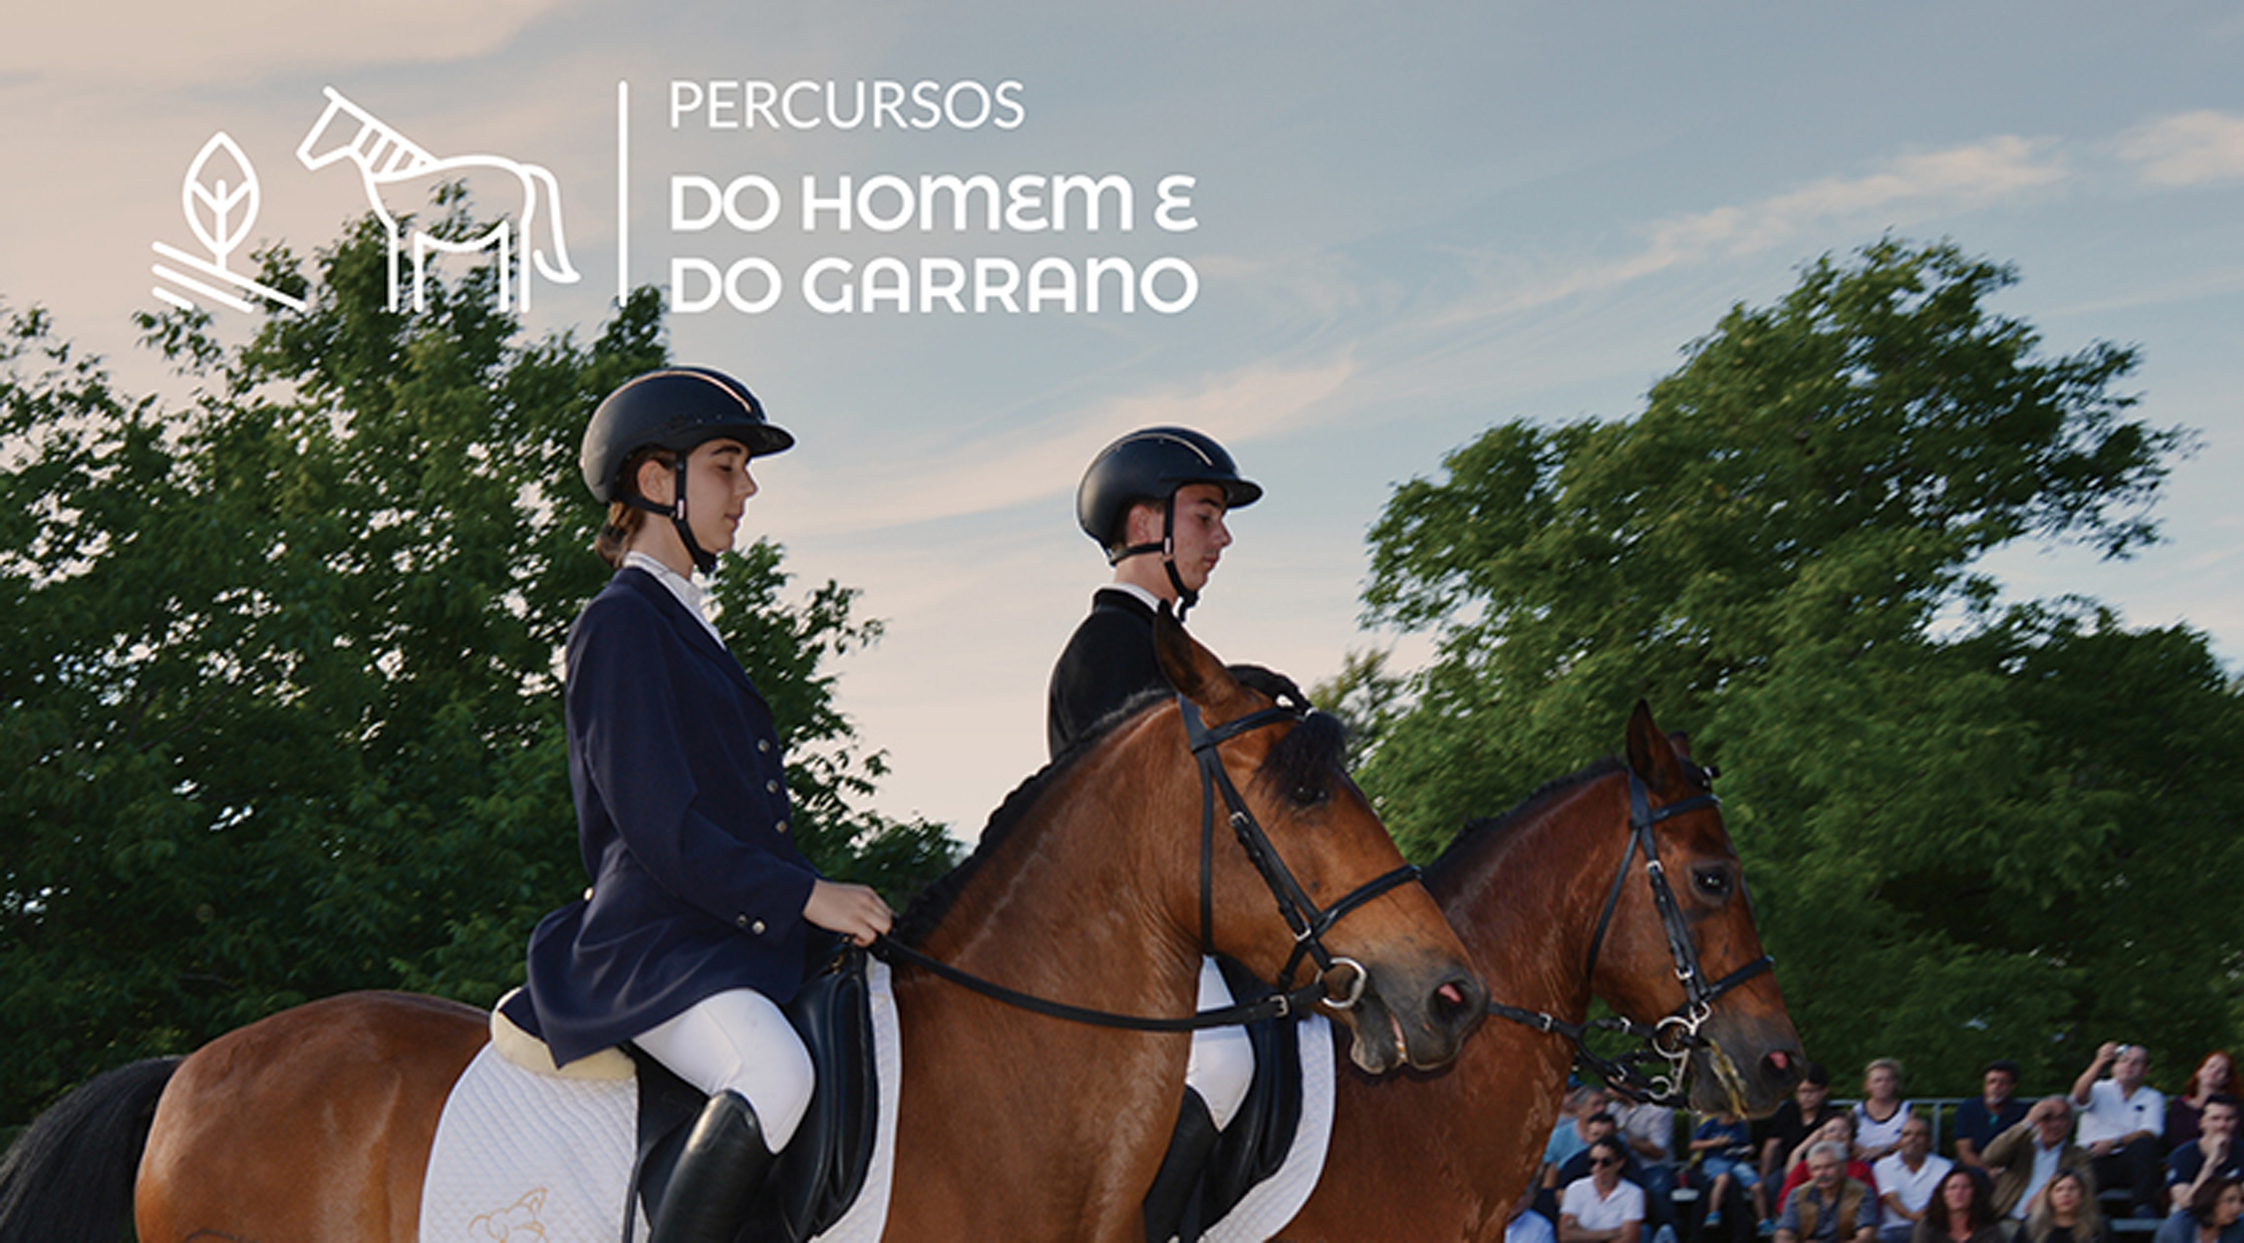 2ème congrès scientifique autour du poney Garrano au Portugal